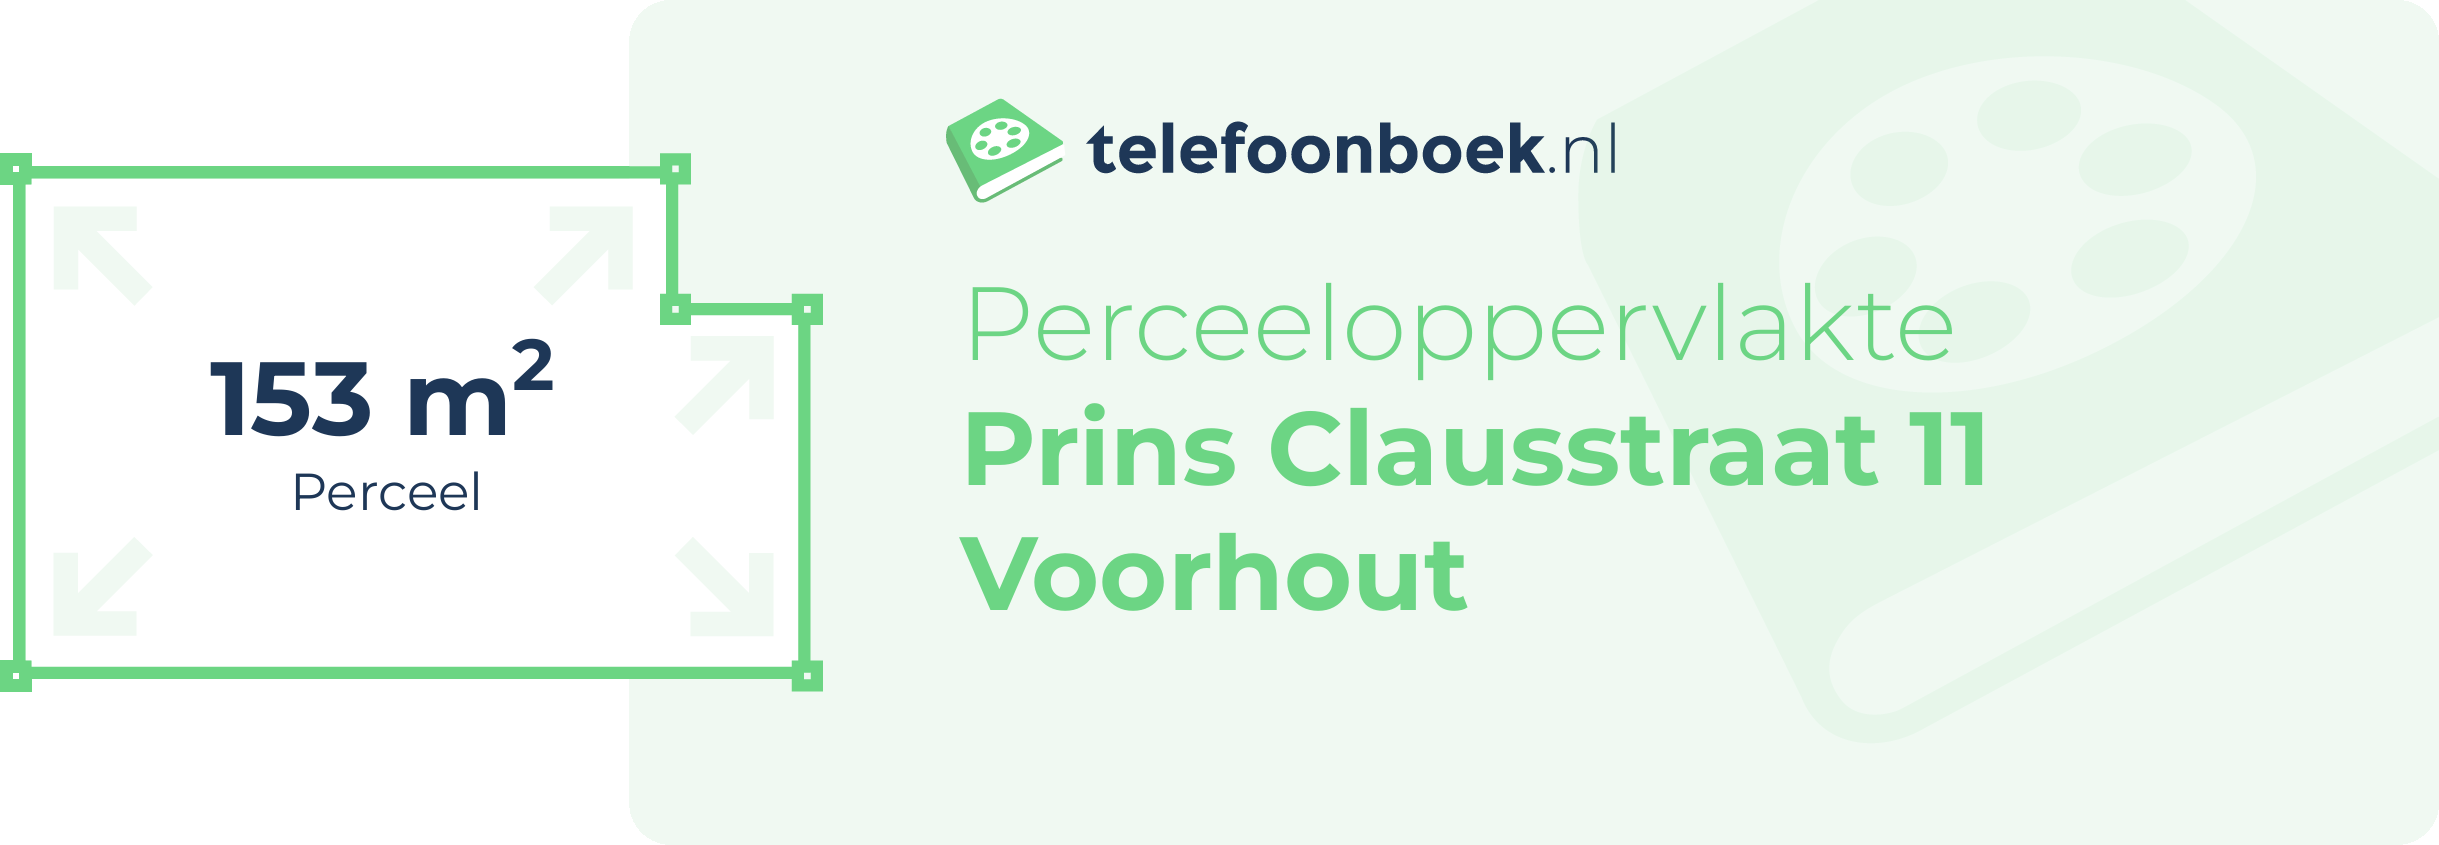 Perceeloppervlakte Prins Clausstraat 11 Voorhout